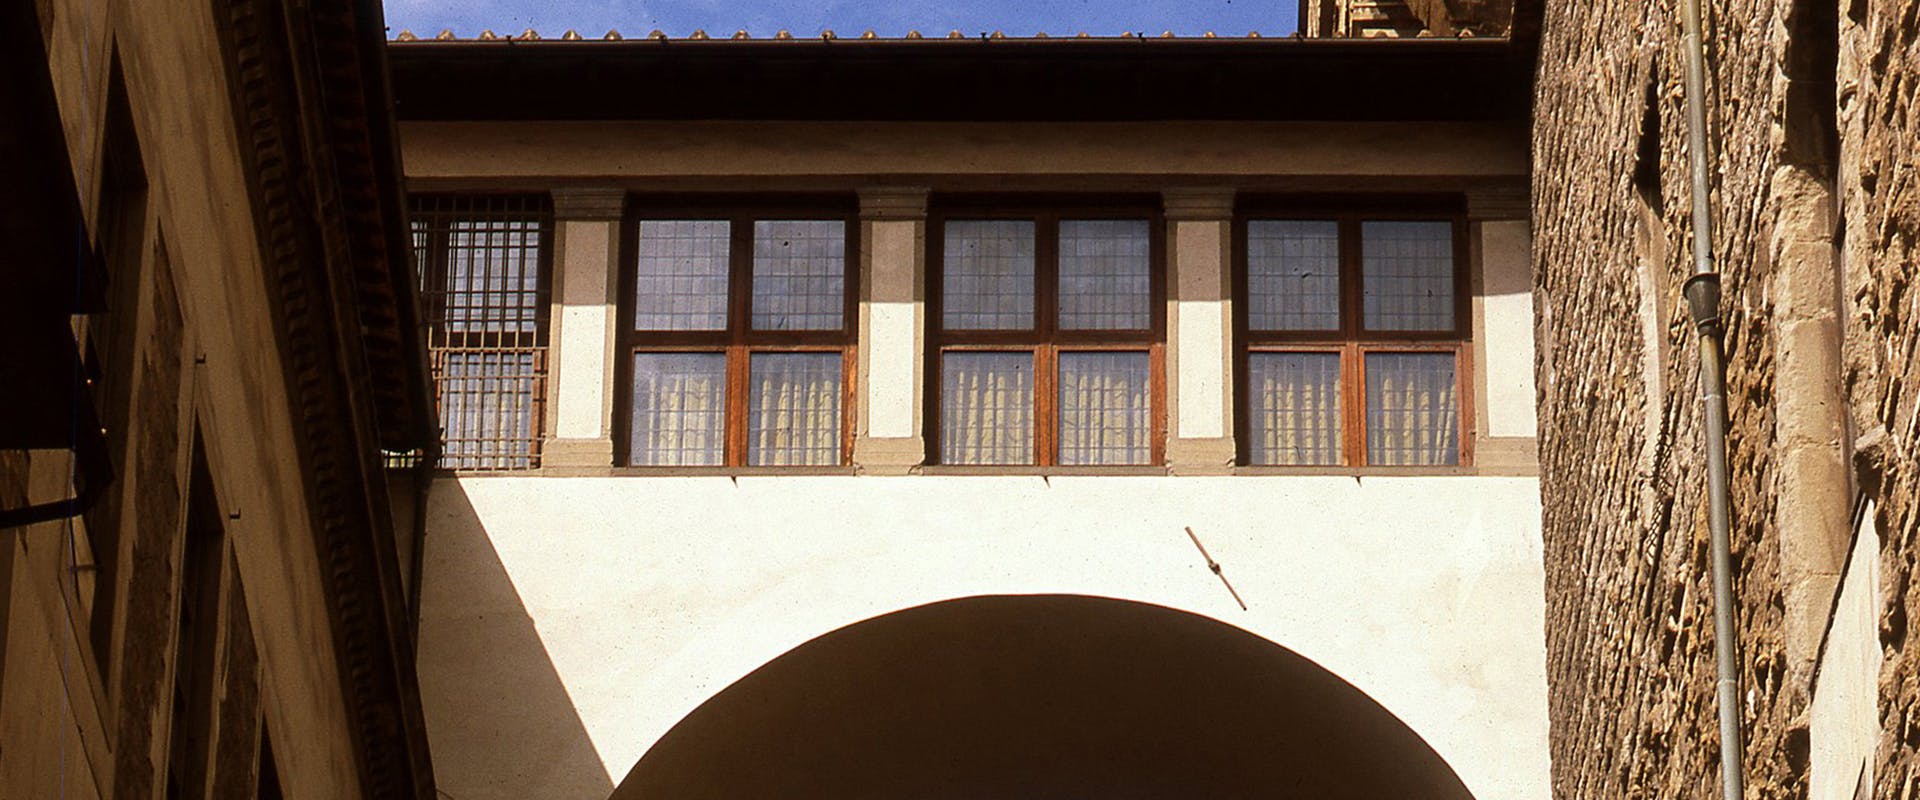 Passaggio da Palazzo Vecchio agli Uffizi temporaneamente sospeso per lavori di manutenzione